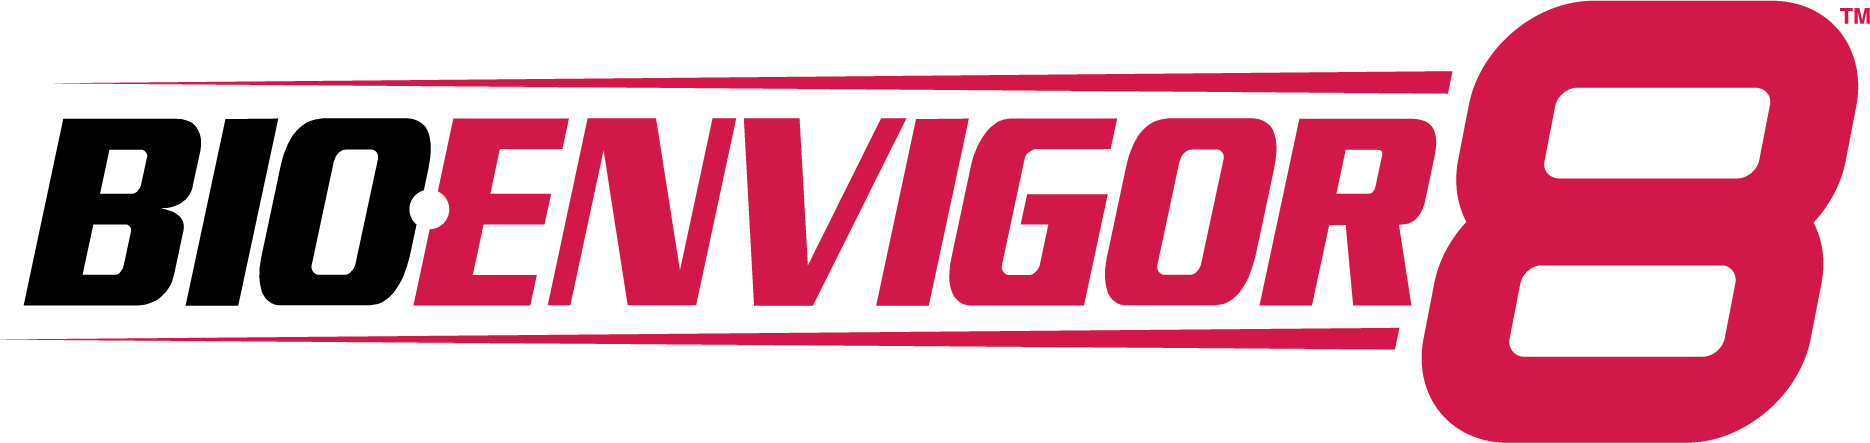 BioEnvigor8 Logo_red